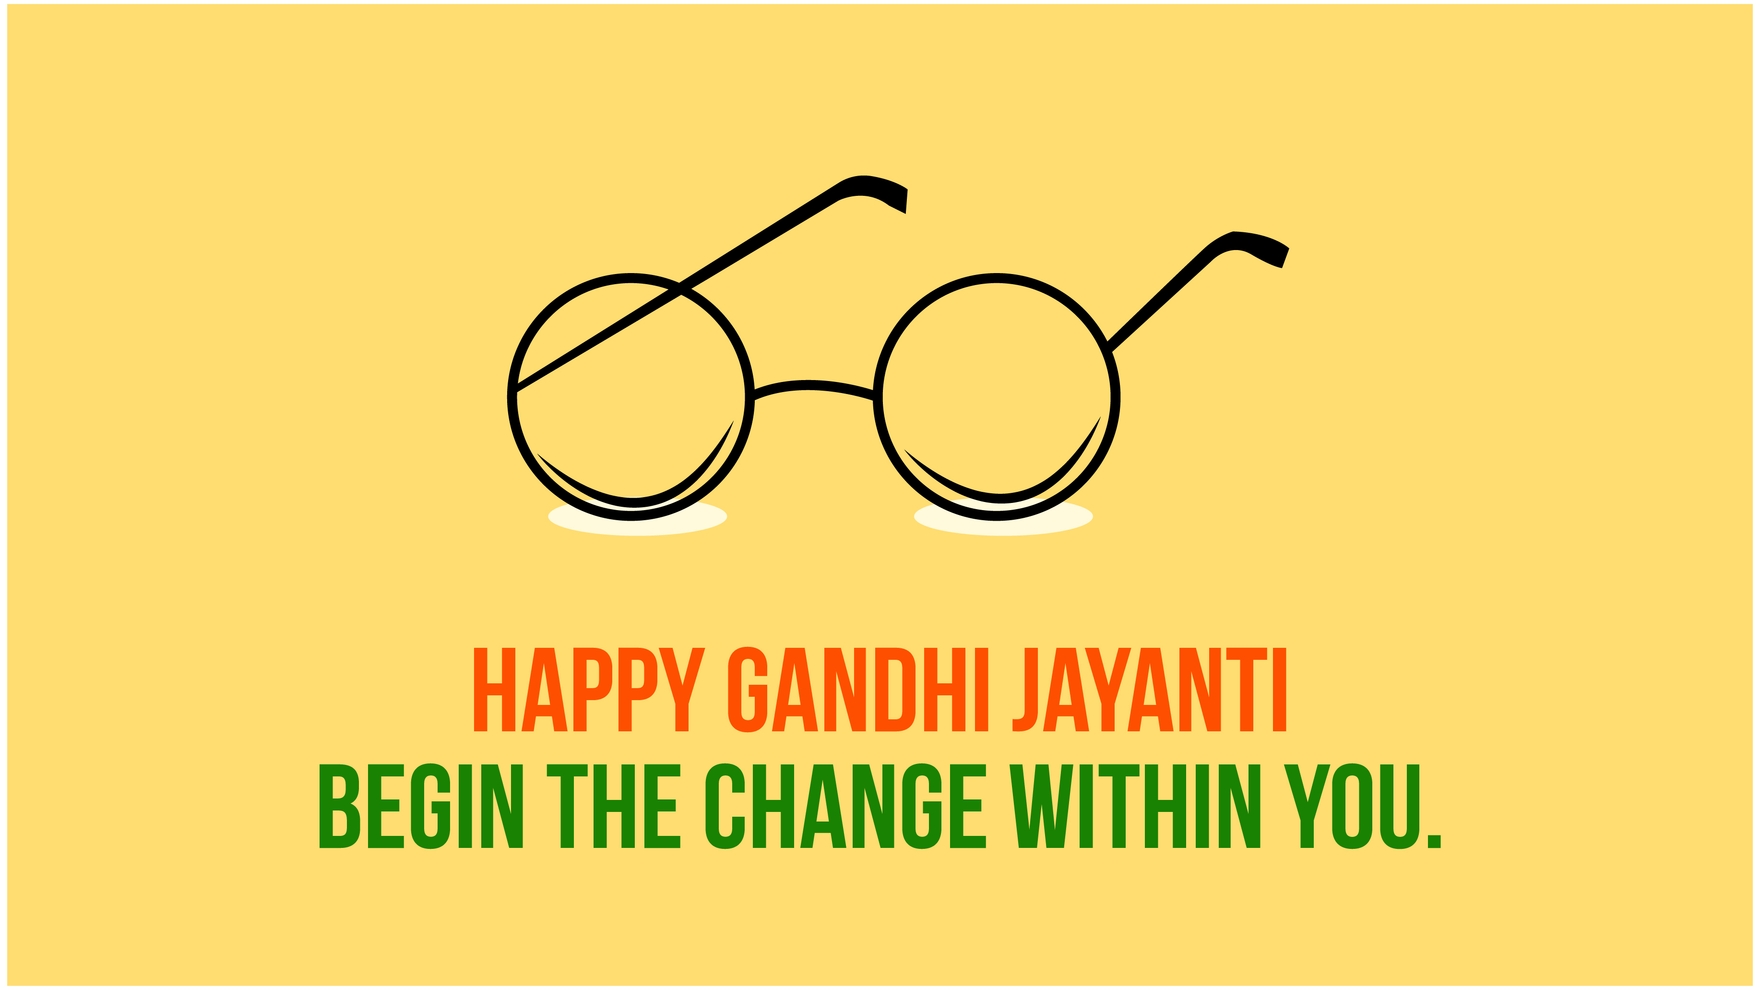 Gandhi Jayanti Flyer Background in PDF, Illustrator, PSD, EPS, SVG, JPG, PNG